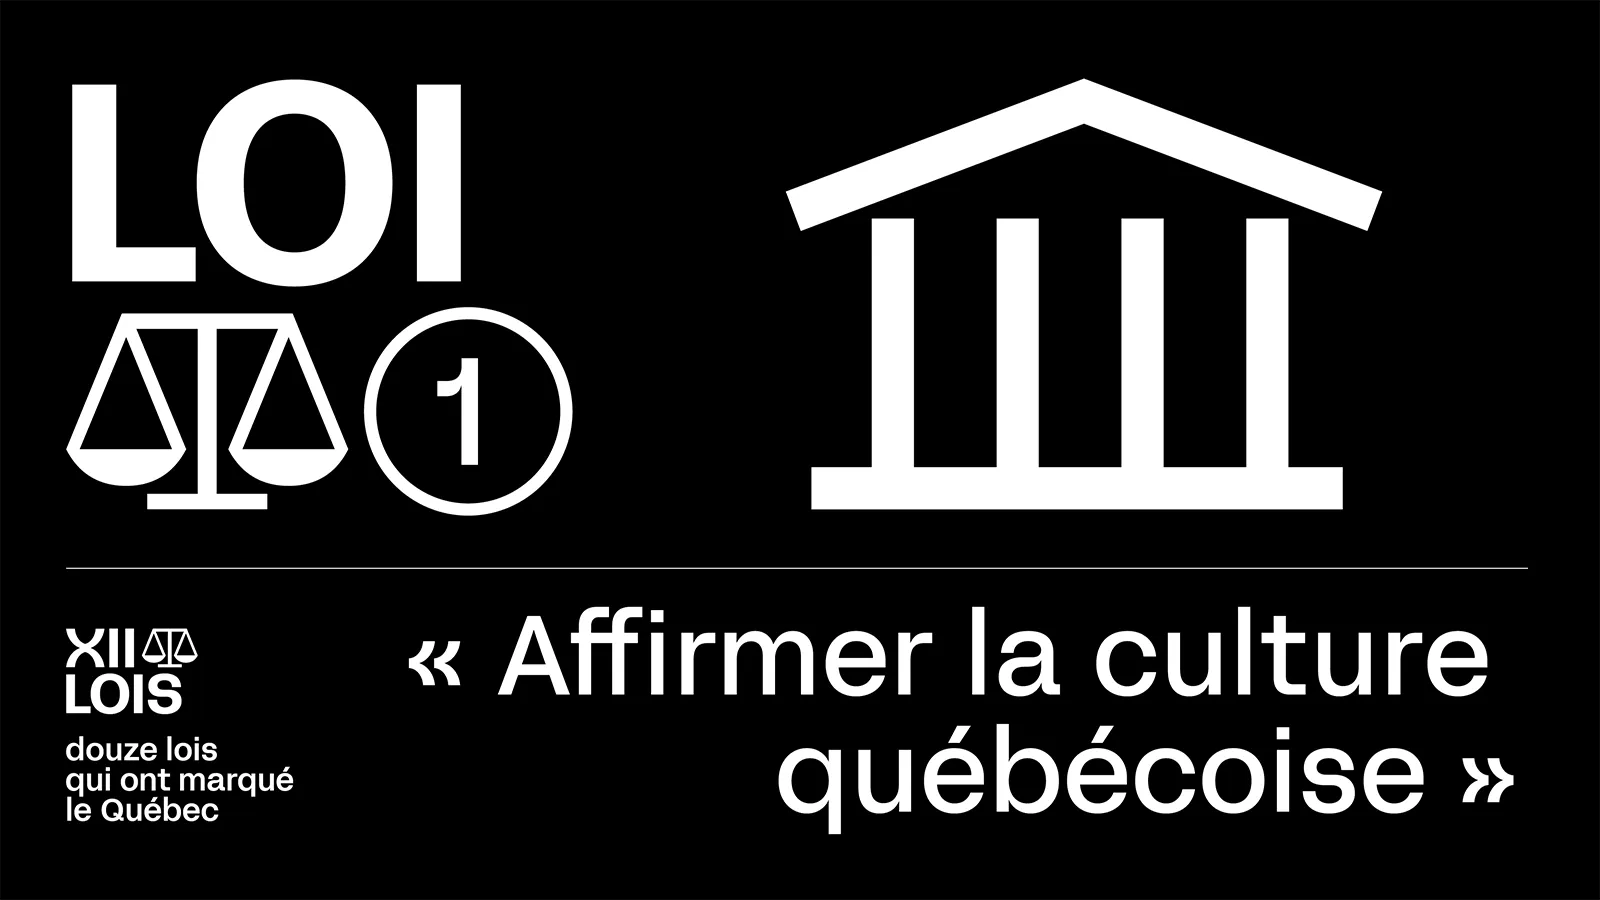 Douze lois qui ont marqué le Québec - 1 - Affirmer la culture québécoise